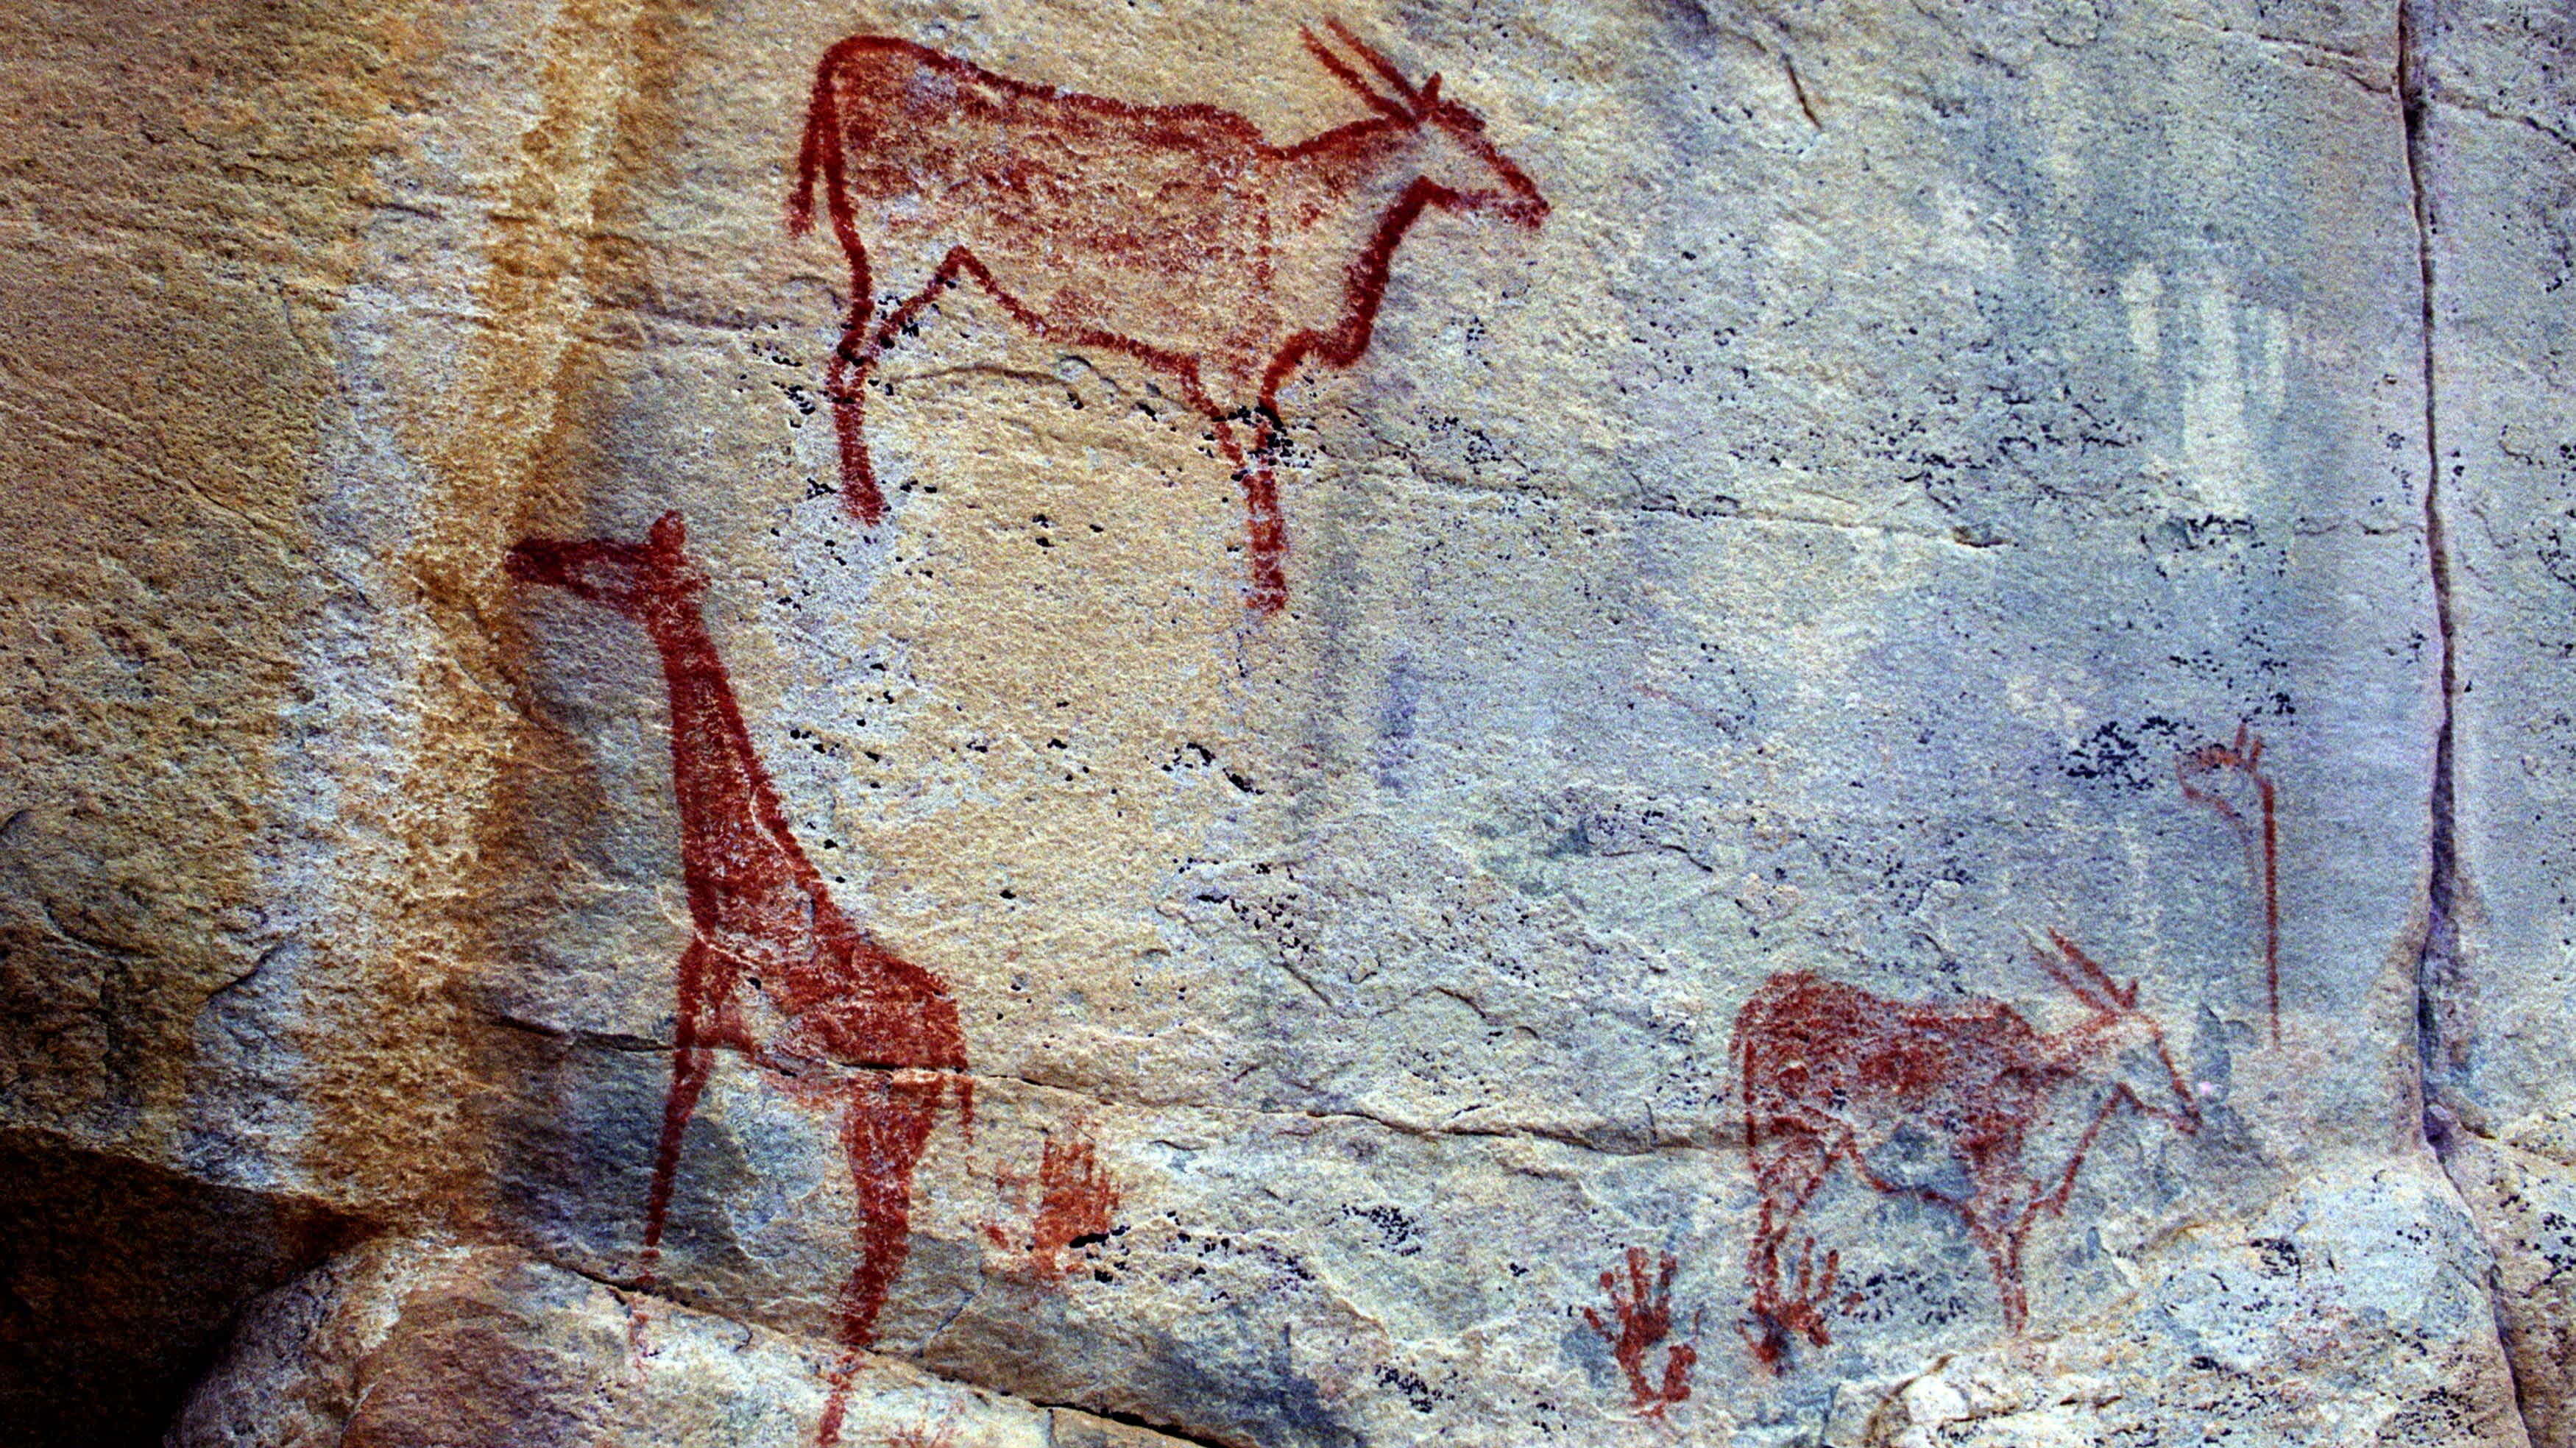 Peinture rupestre dans les Tsodilo Hills, Botswana. Les peintures sont attribuées au peuple San. Les Tsodilo Hills sont inscrites au patrimoine mondial de l'UNESCO et se composent de gravures rupestres, d'abris, de cavités et de grottes.